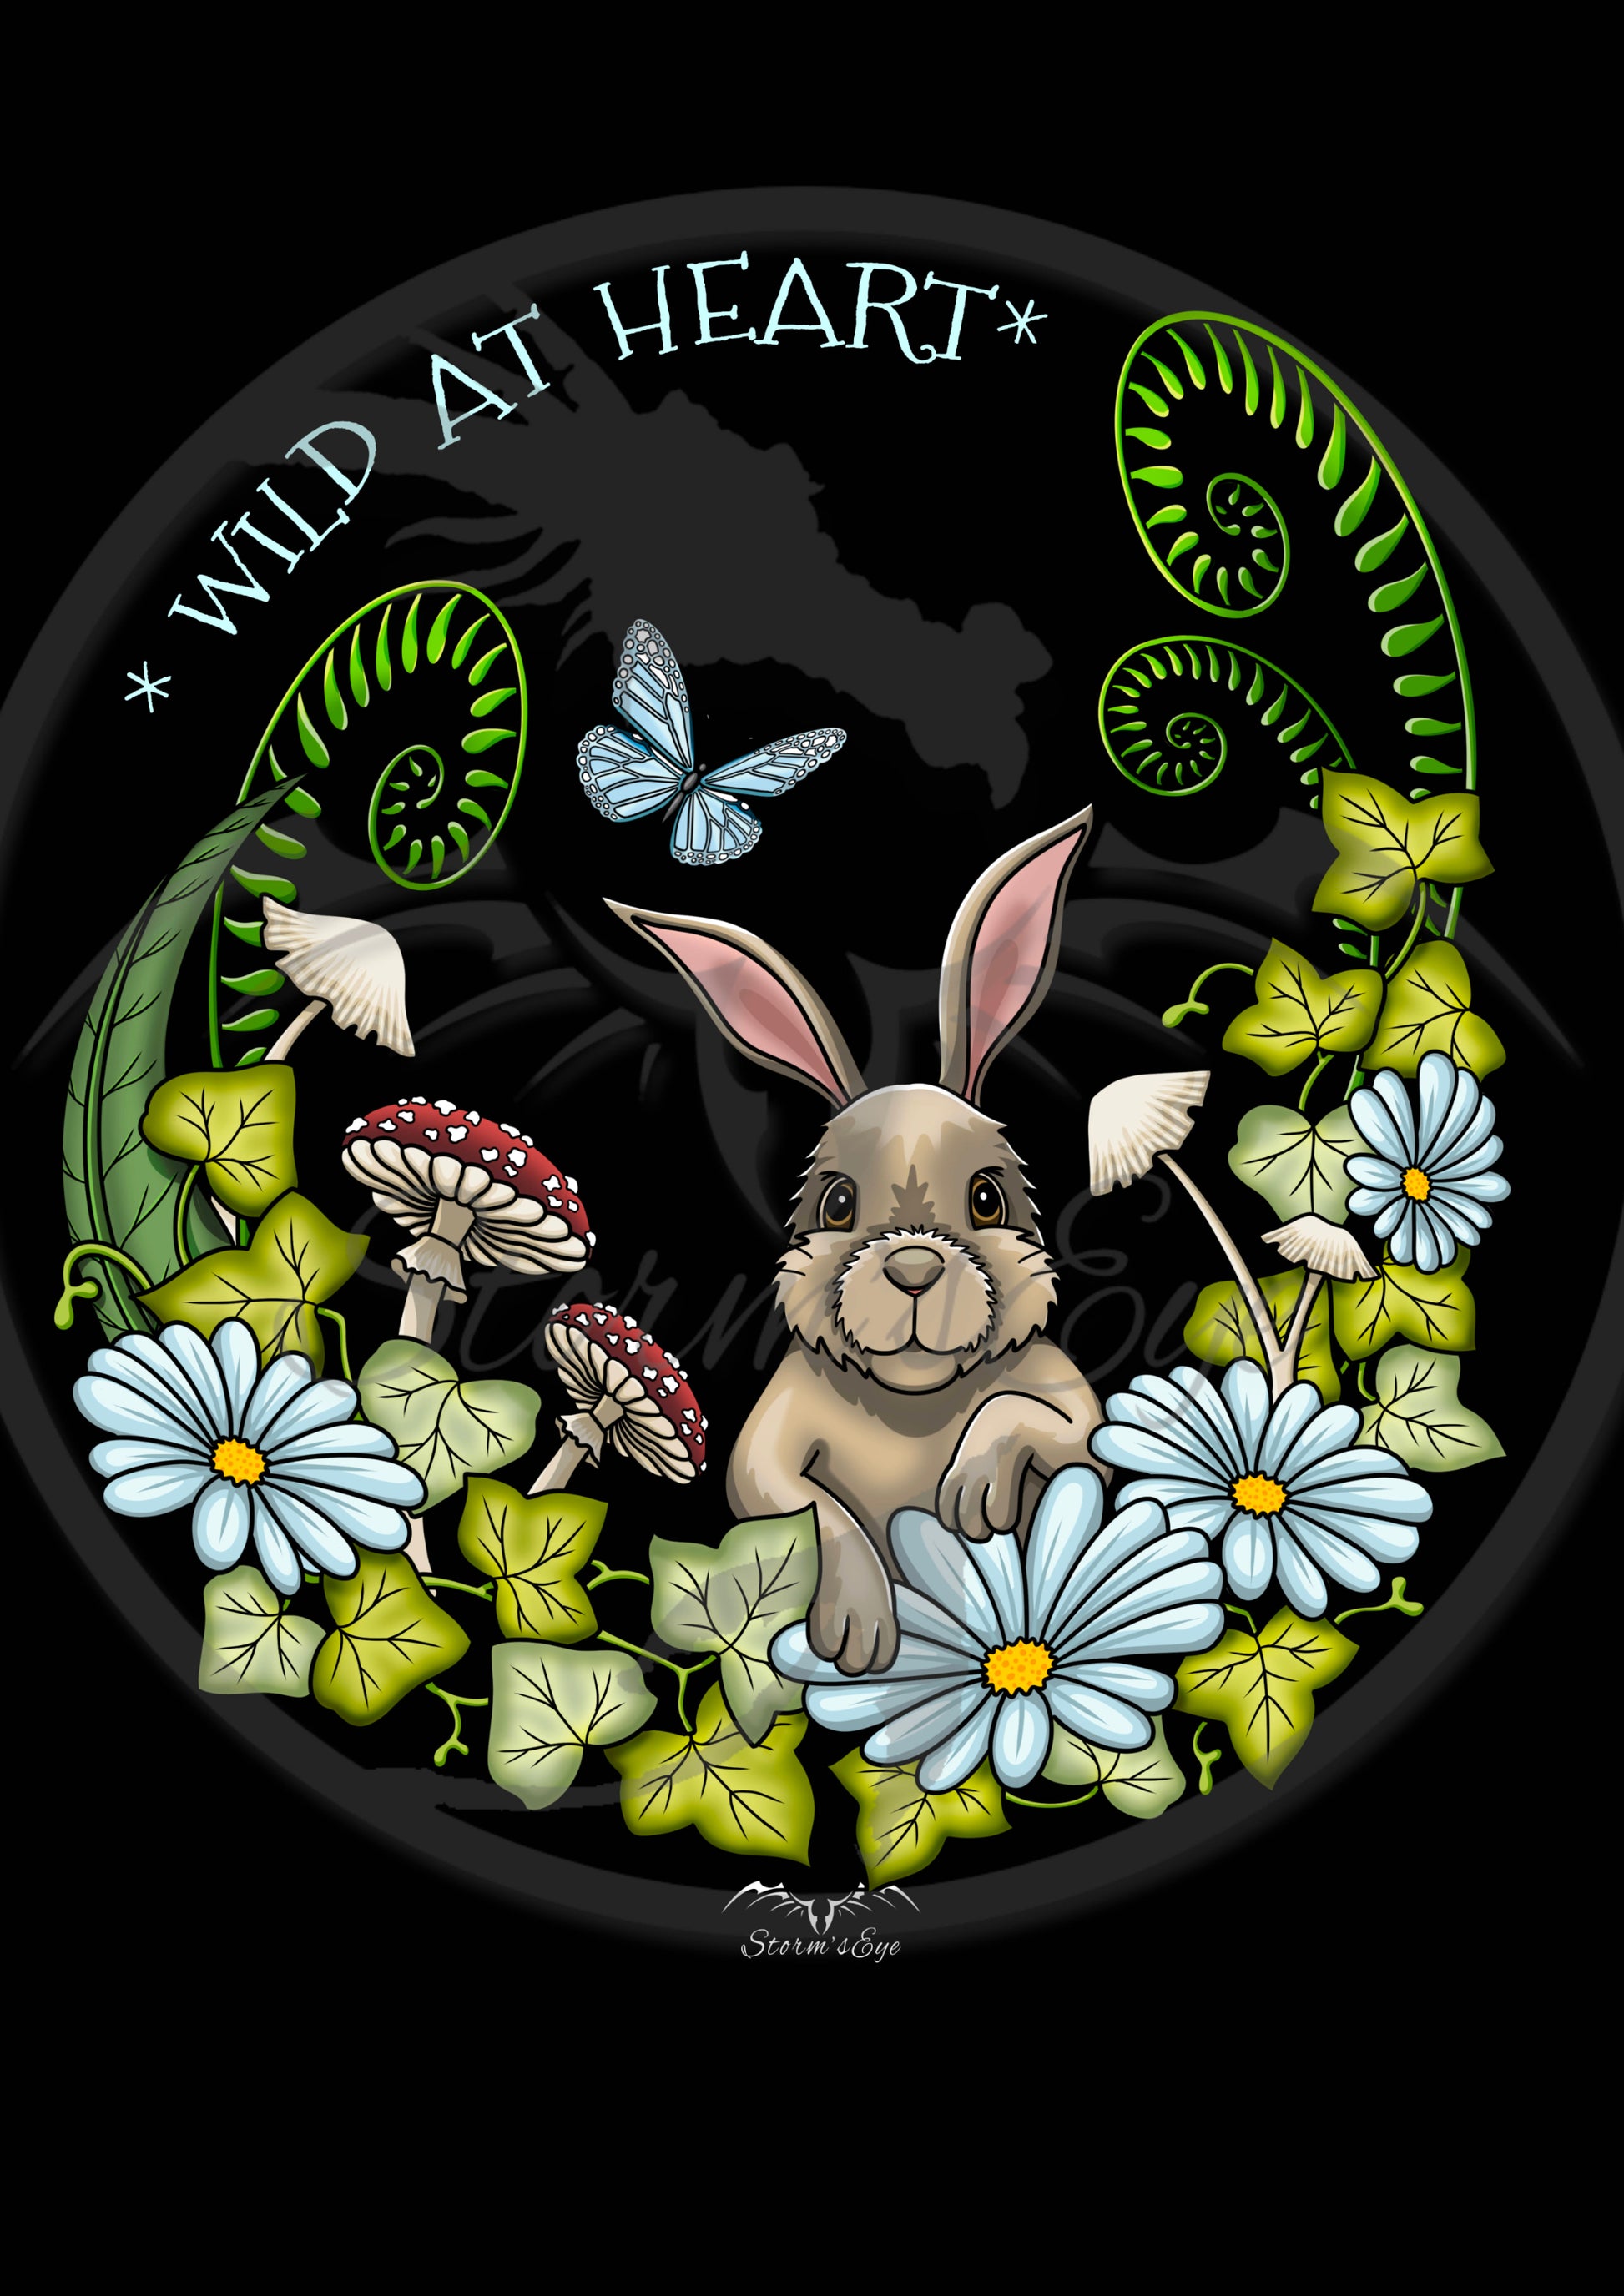 Pretty Rabbit Wild At Heart design, by Stormseye Design